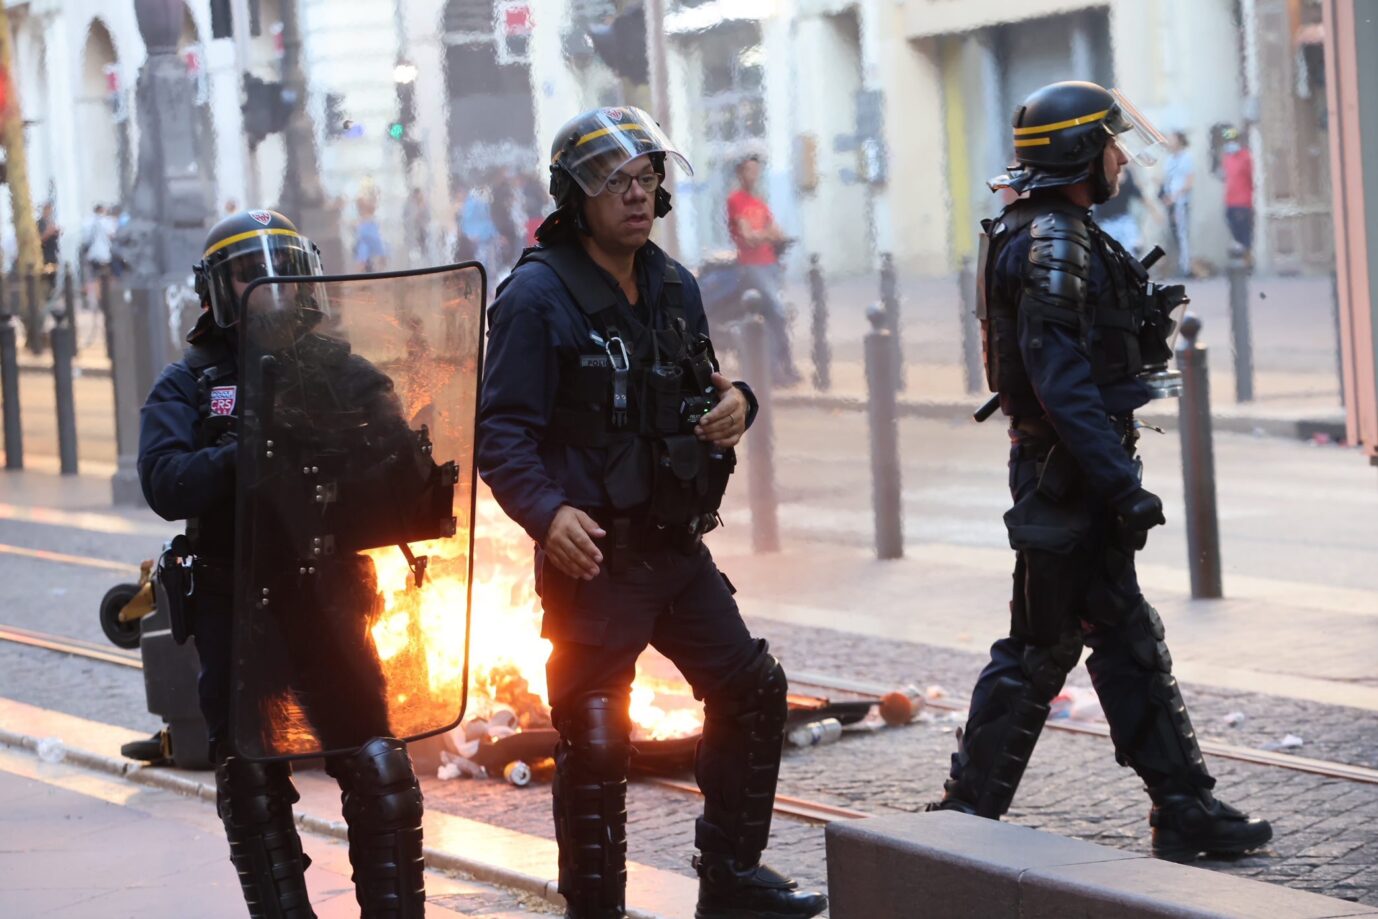 Polizisten versuchen die Ausschreitungen in Frankreich unter Kontrolle zu bringen